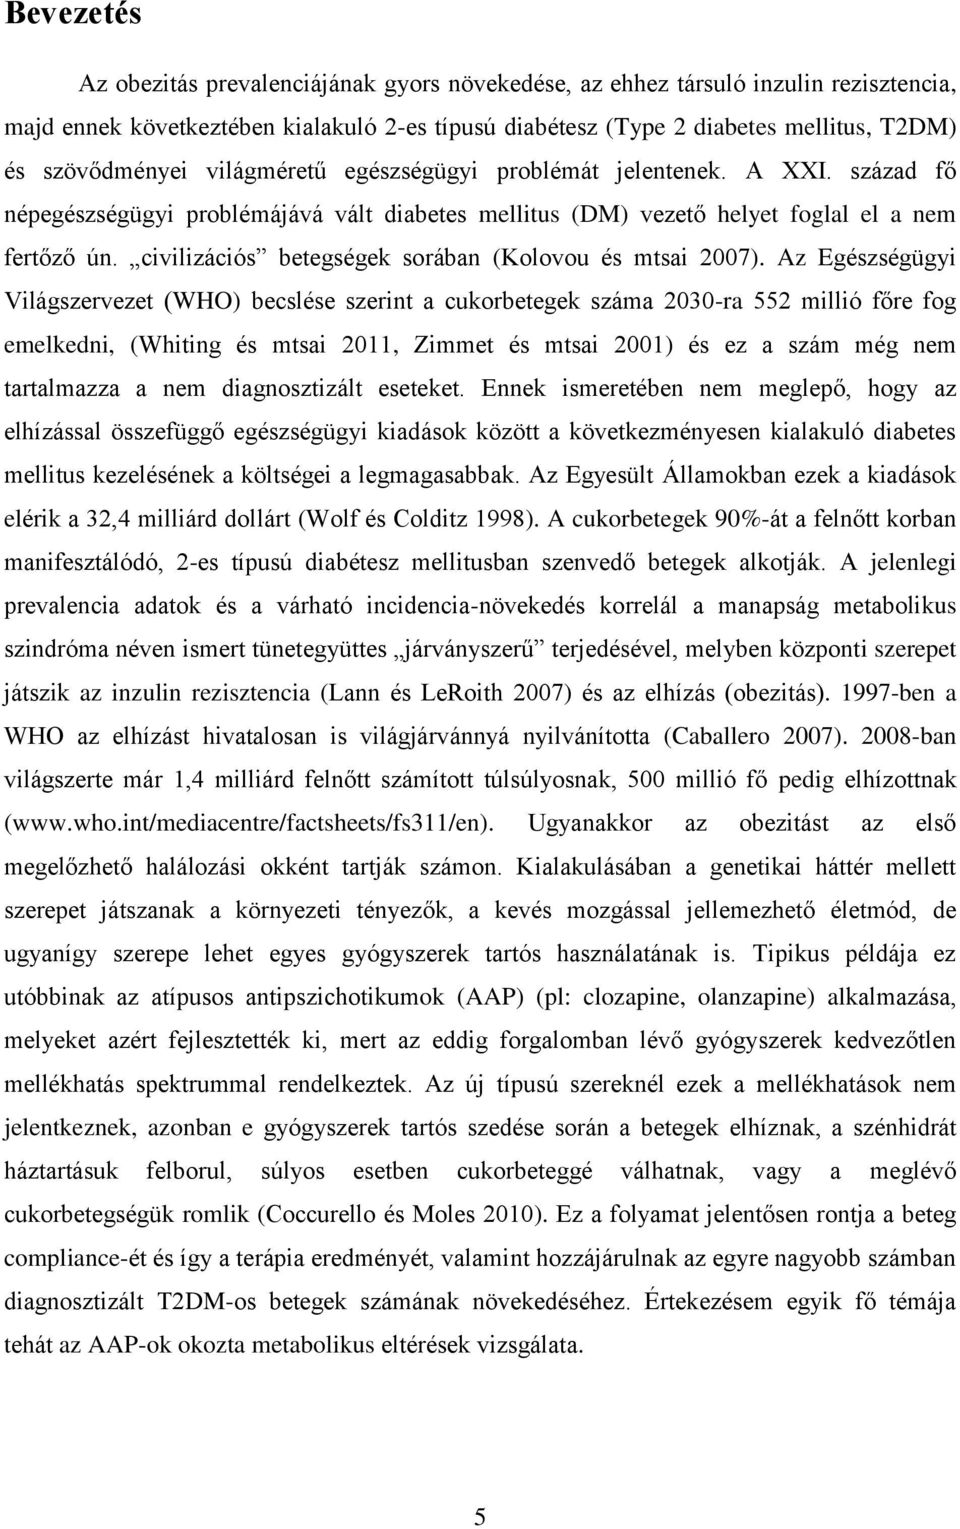 civilizációs betegségek sorában (Kolovou és mtsai 2007).